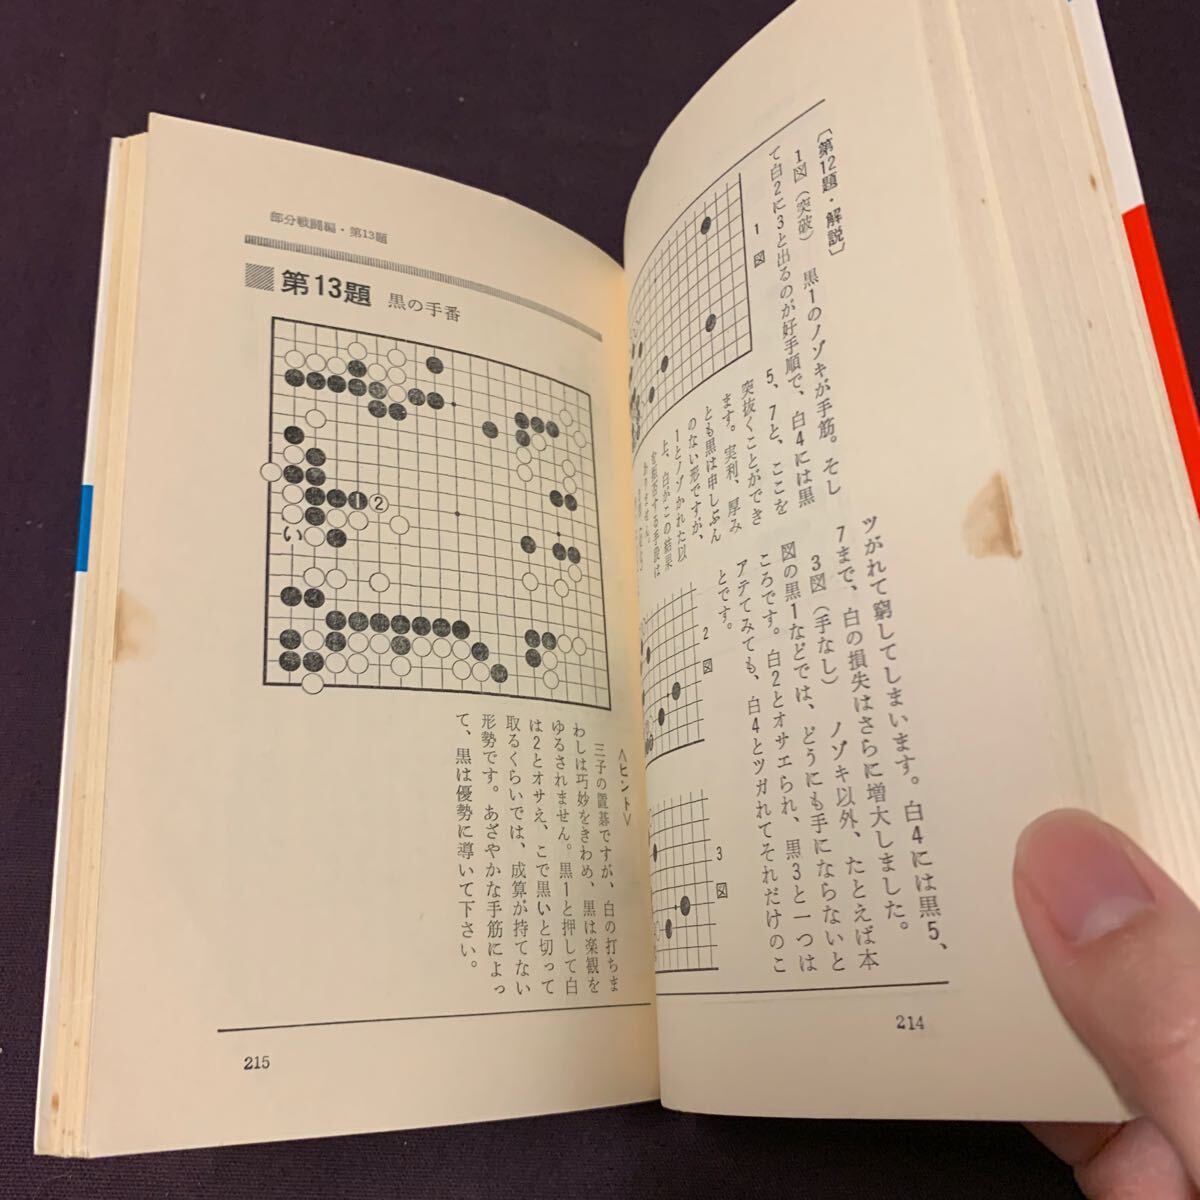 【急所この一手】 ABCBOOKS 坂田本因坊栄寿著 有紀書房 昭和 囲碁の画像8